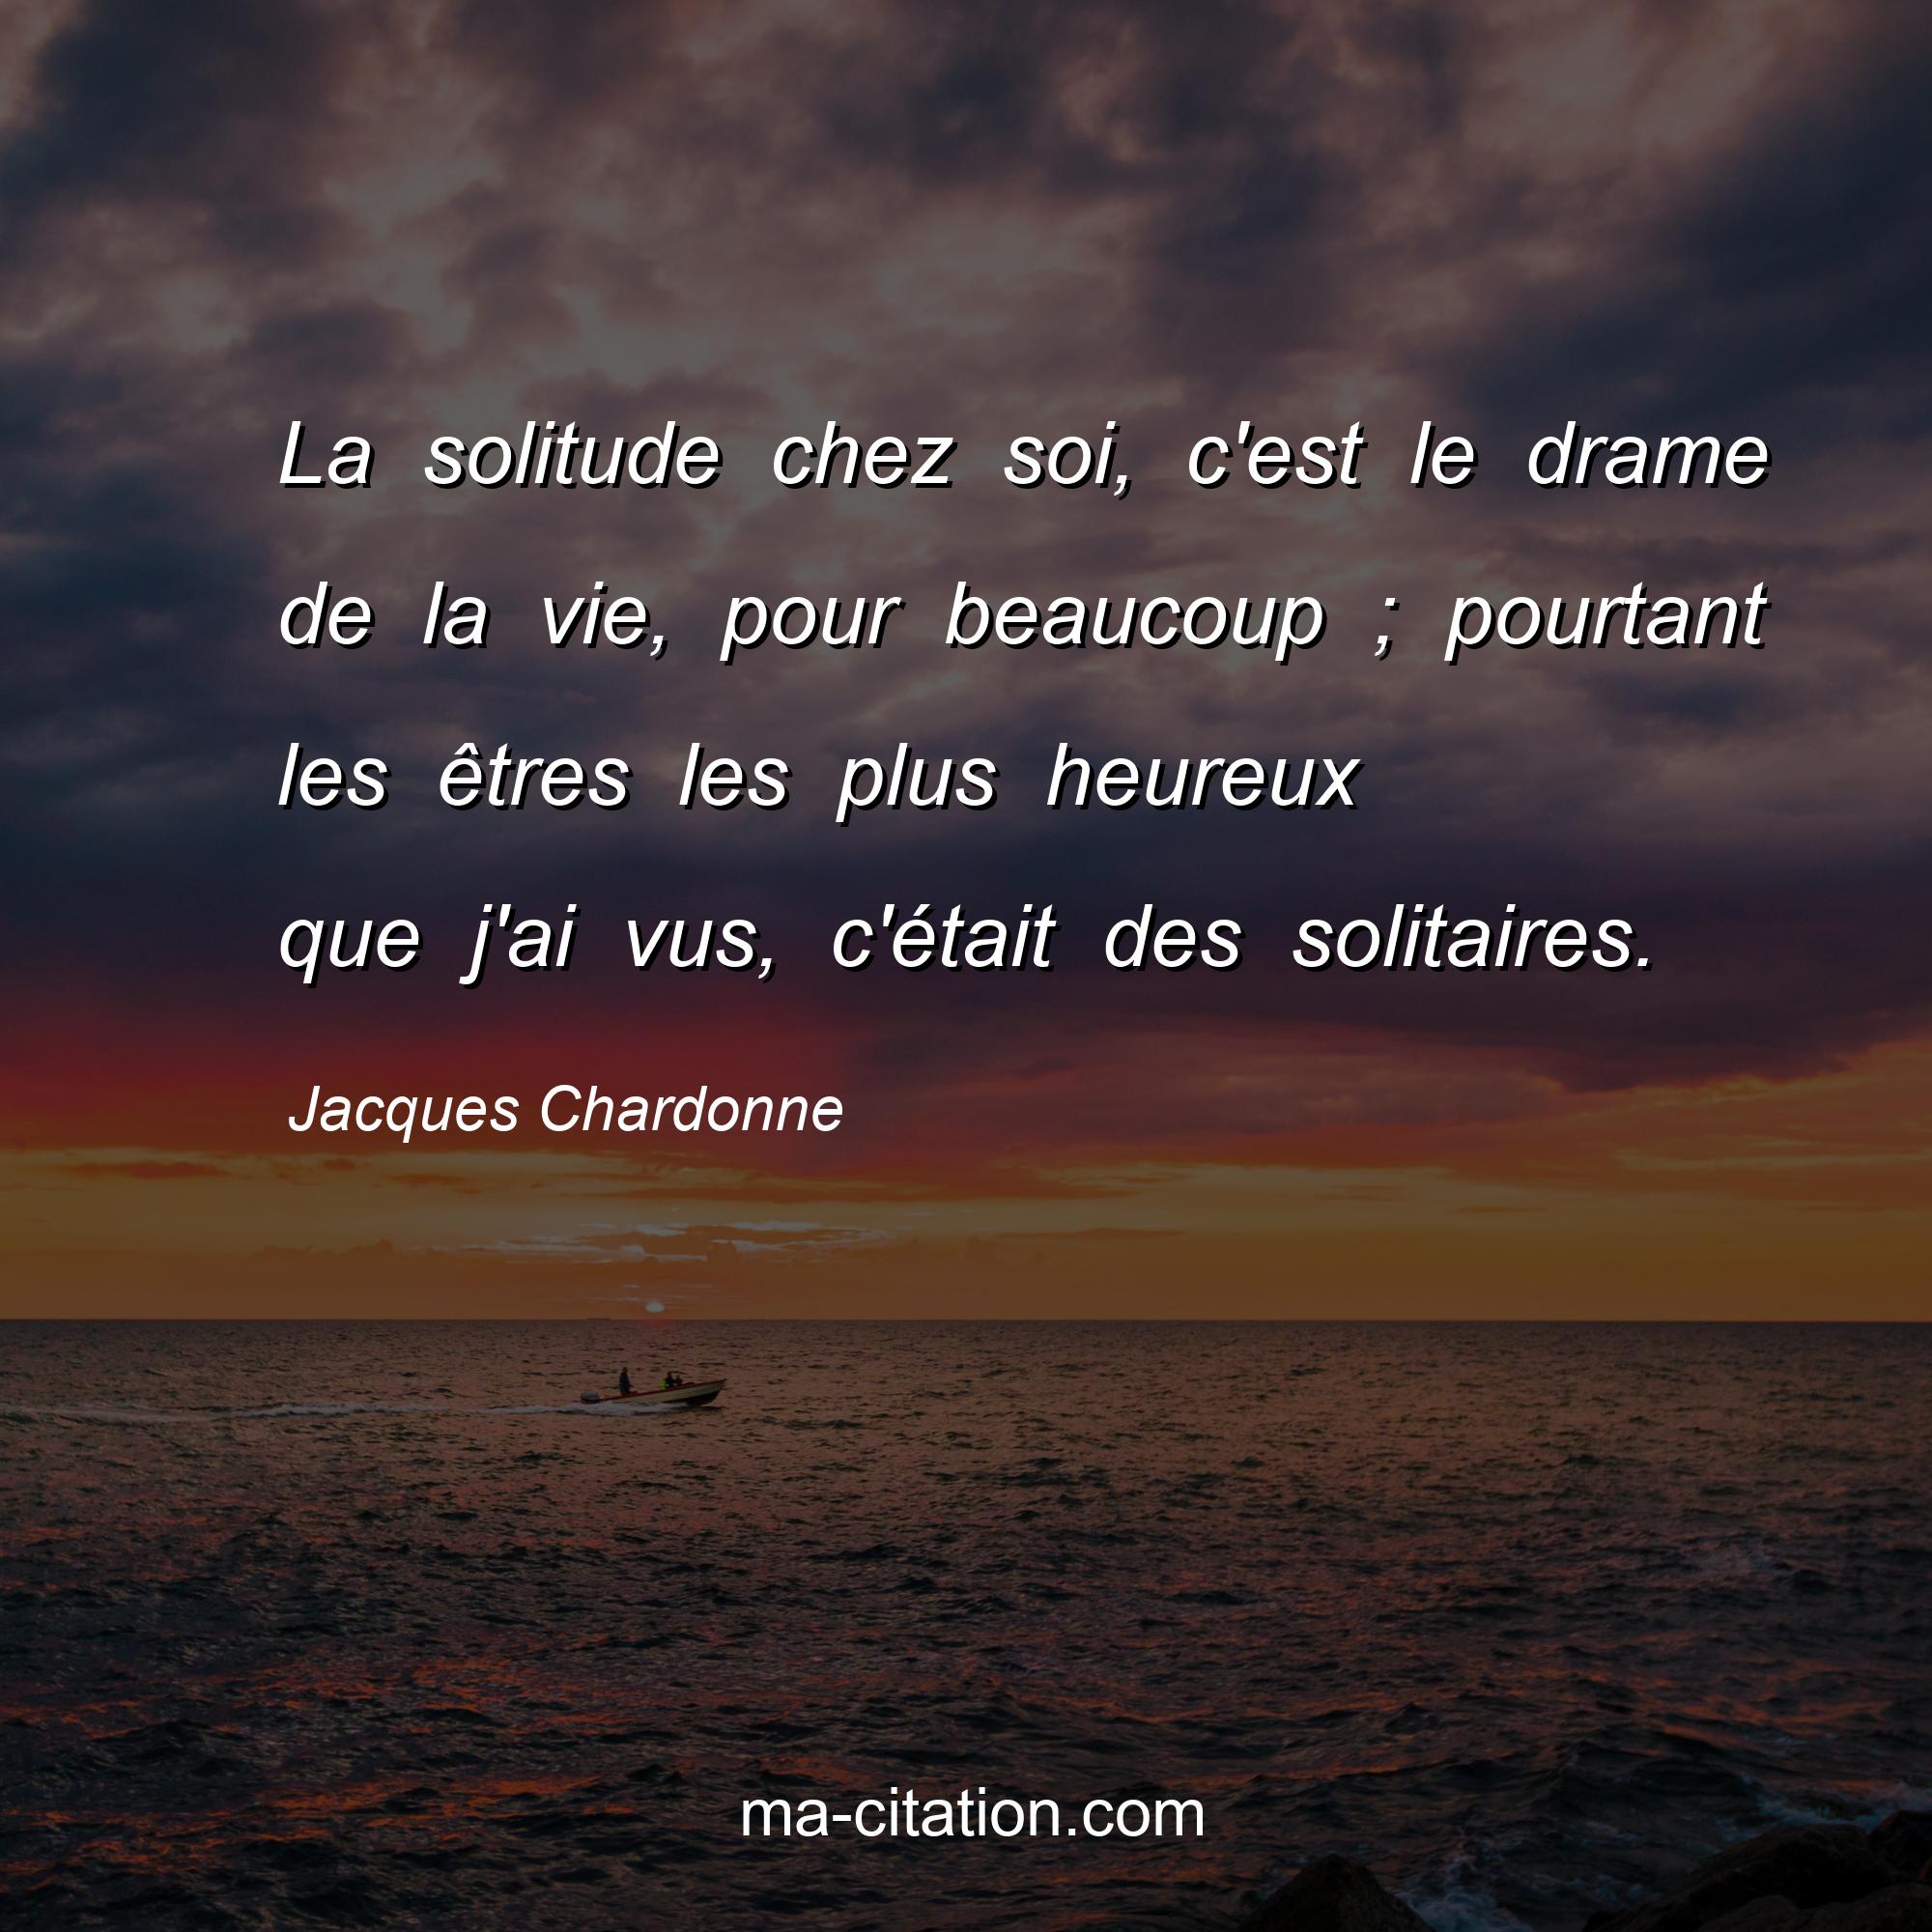 Jacques Chardonne : La solitude chez soi, c'est le drame de la vie, pour beaucoup ; pourtant les êtres les plus heureux que j'ai vus, c'était des solitaires.